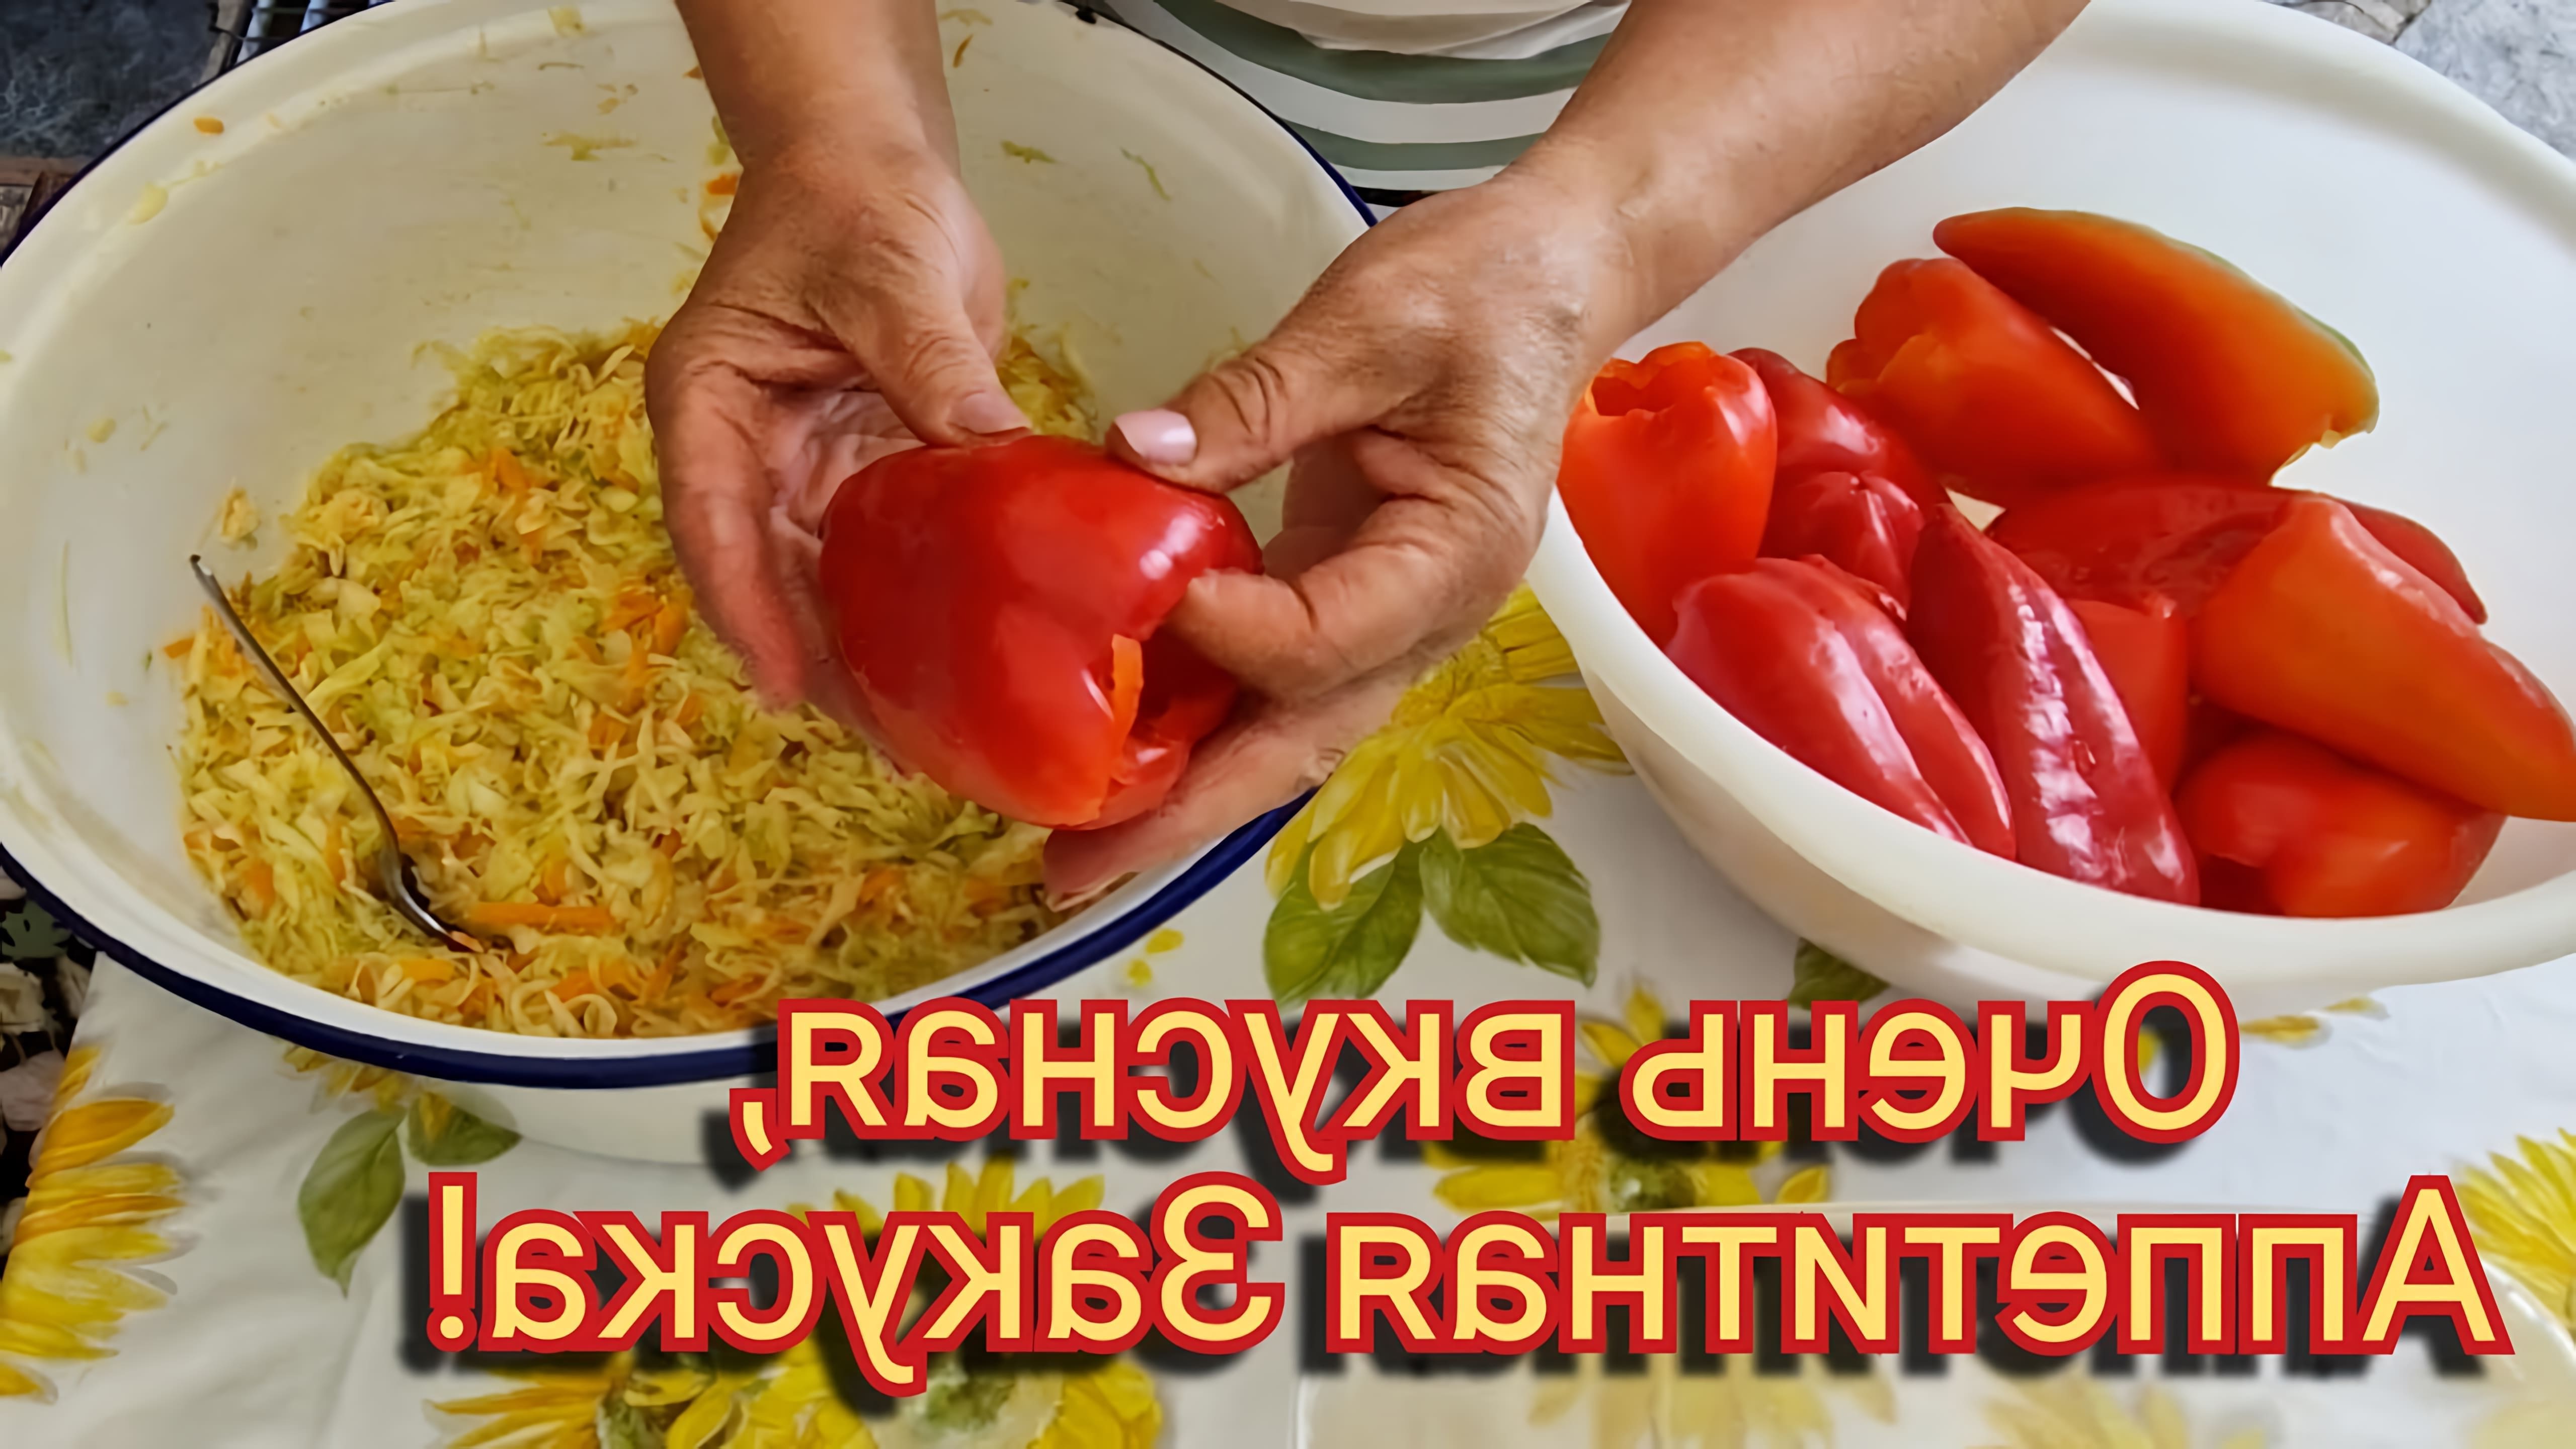 В этом видео девушка готовит фаршированный перец с капустой по молдавски